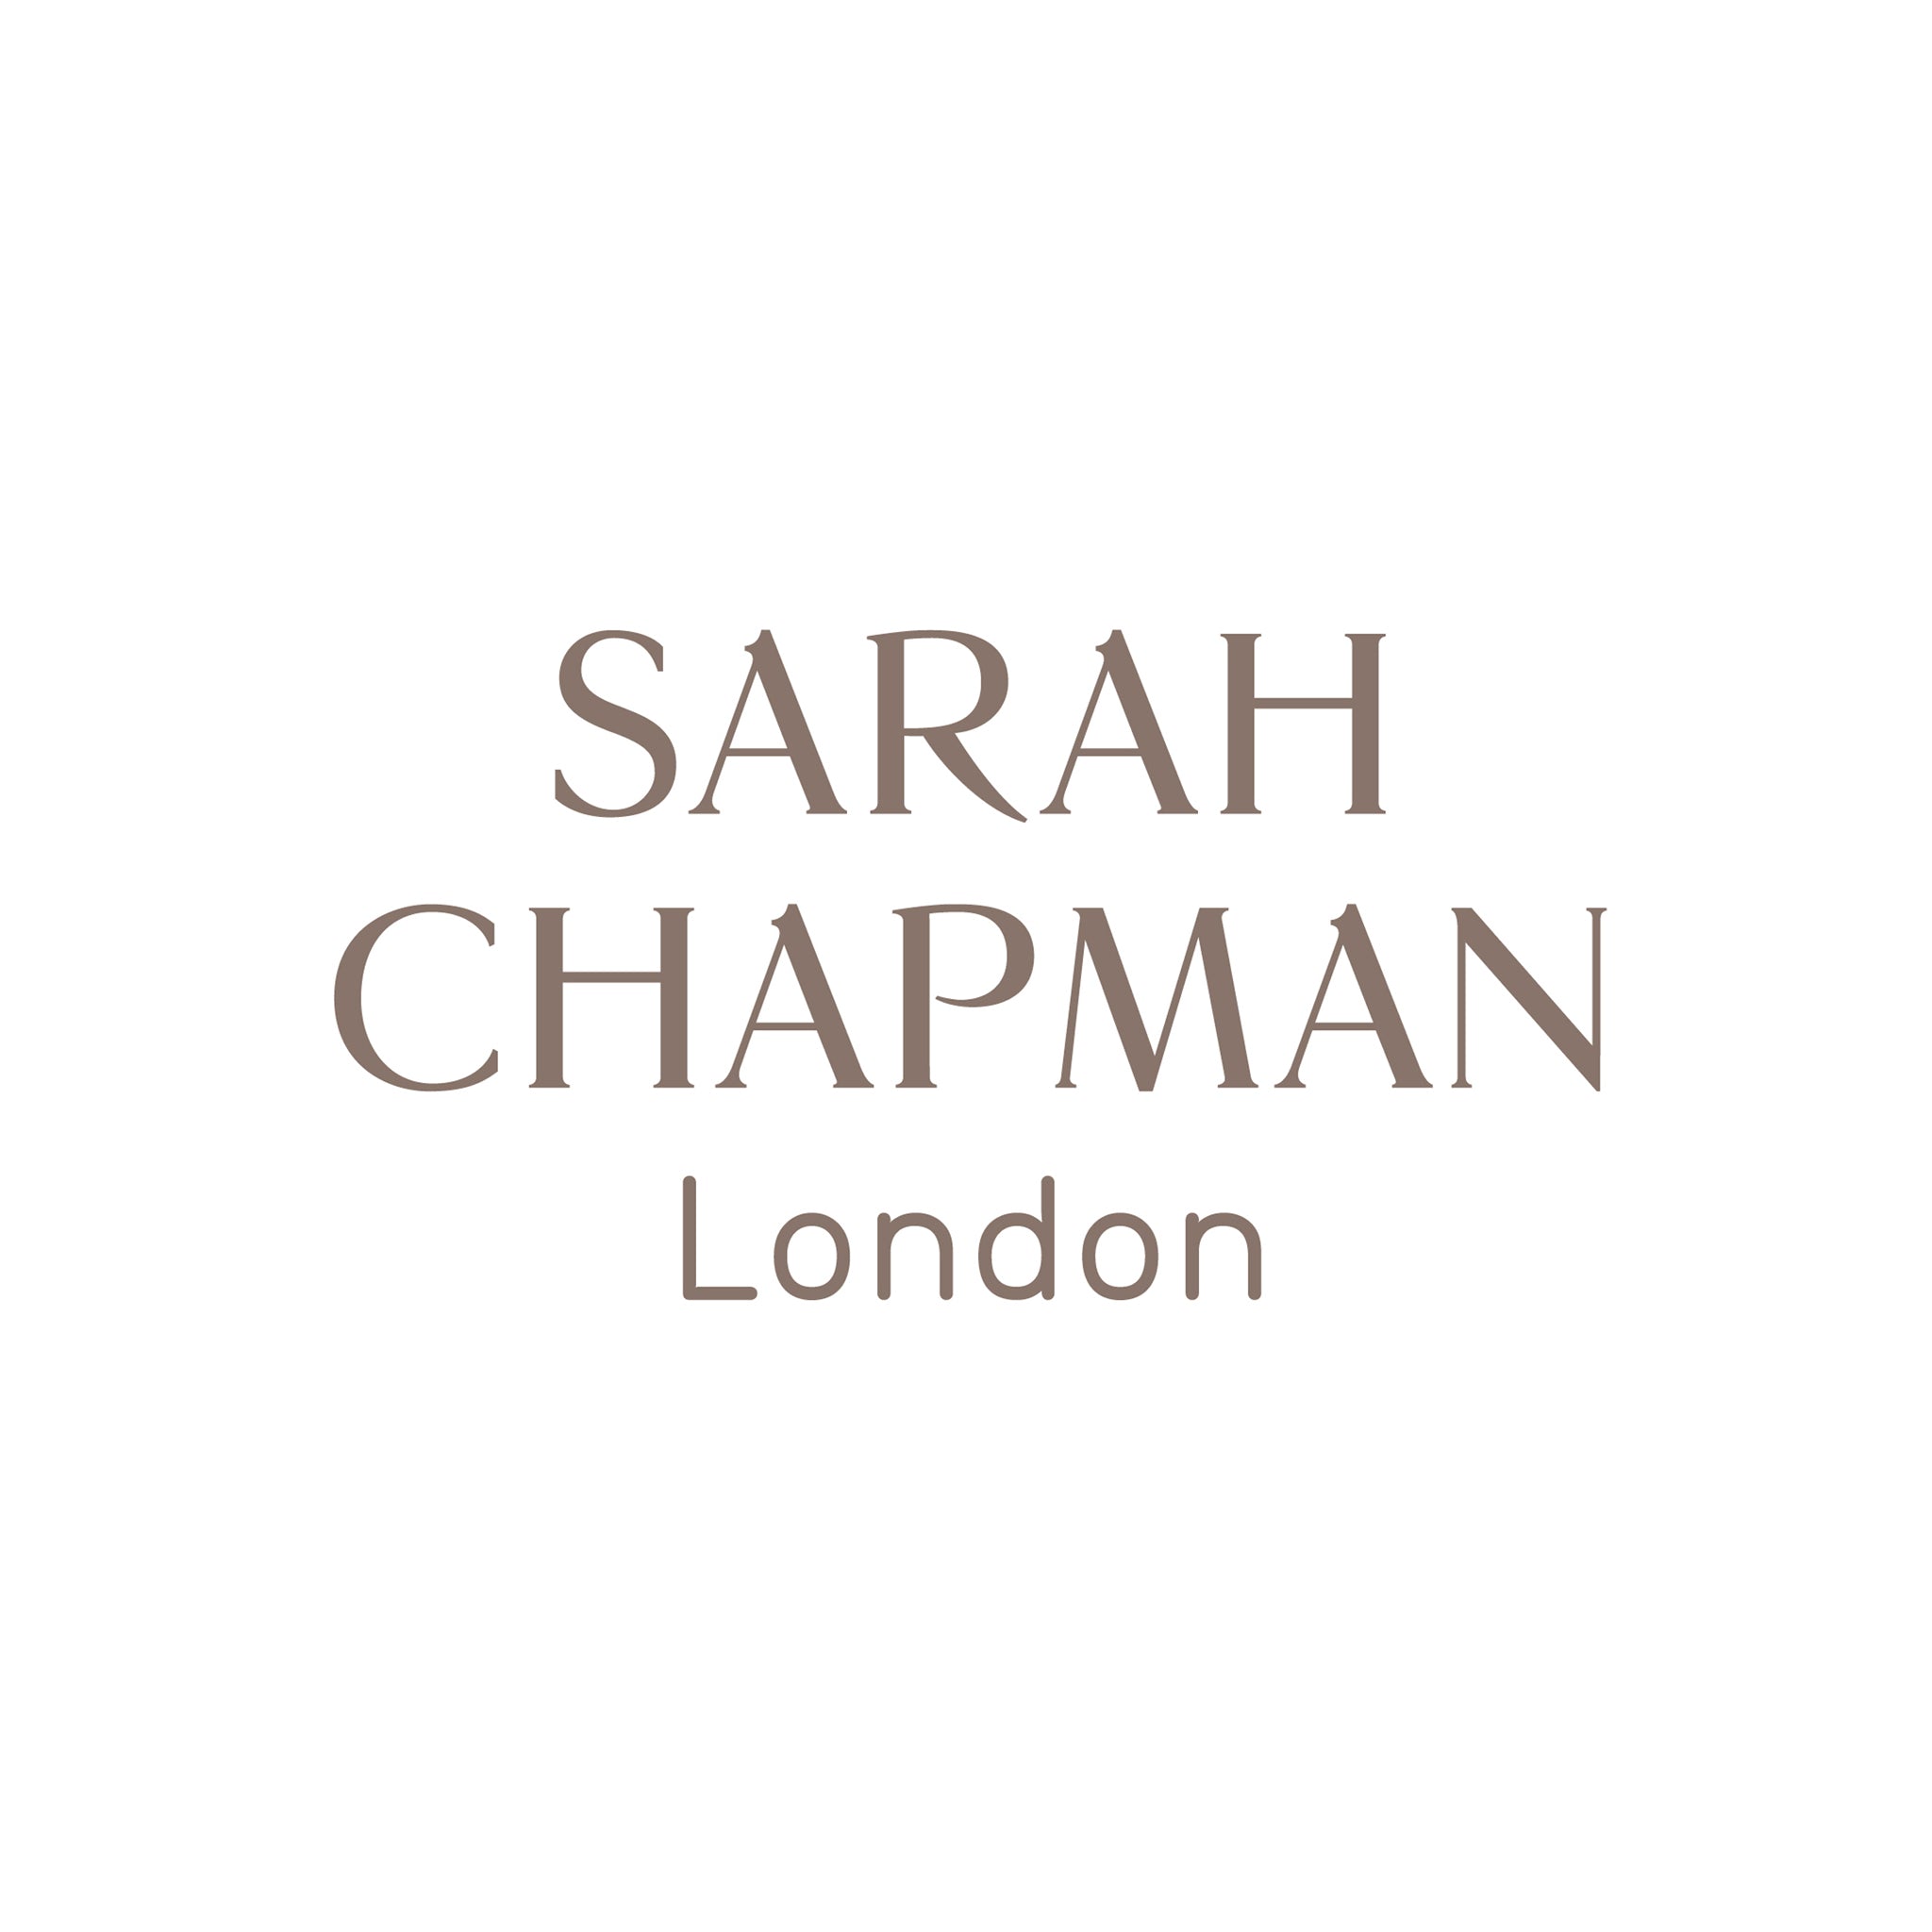 SARAH CHAPMAN